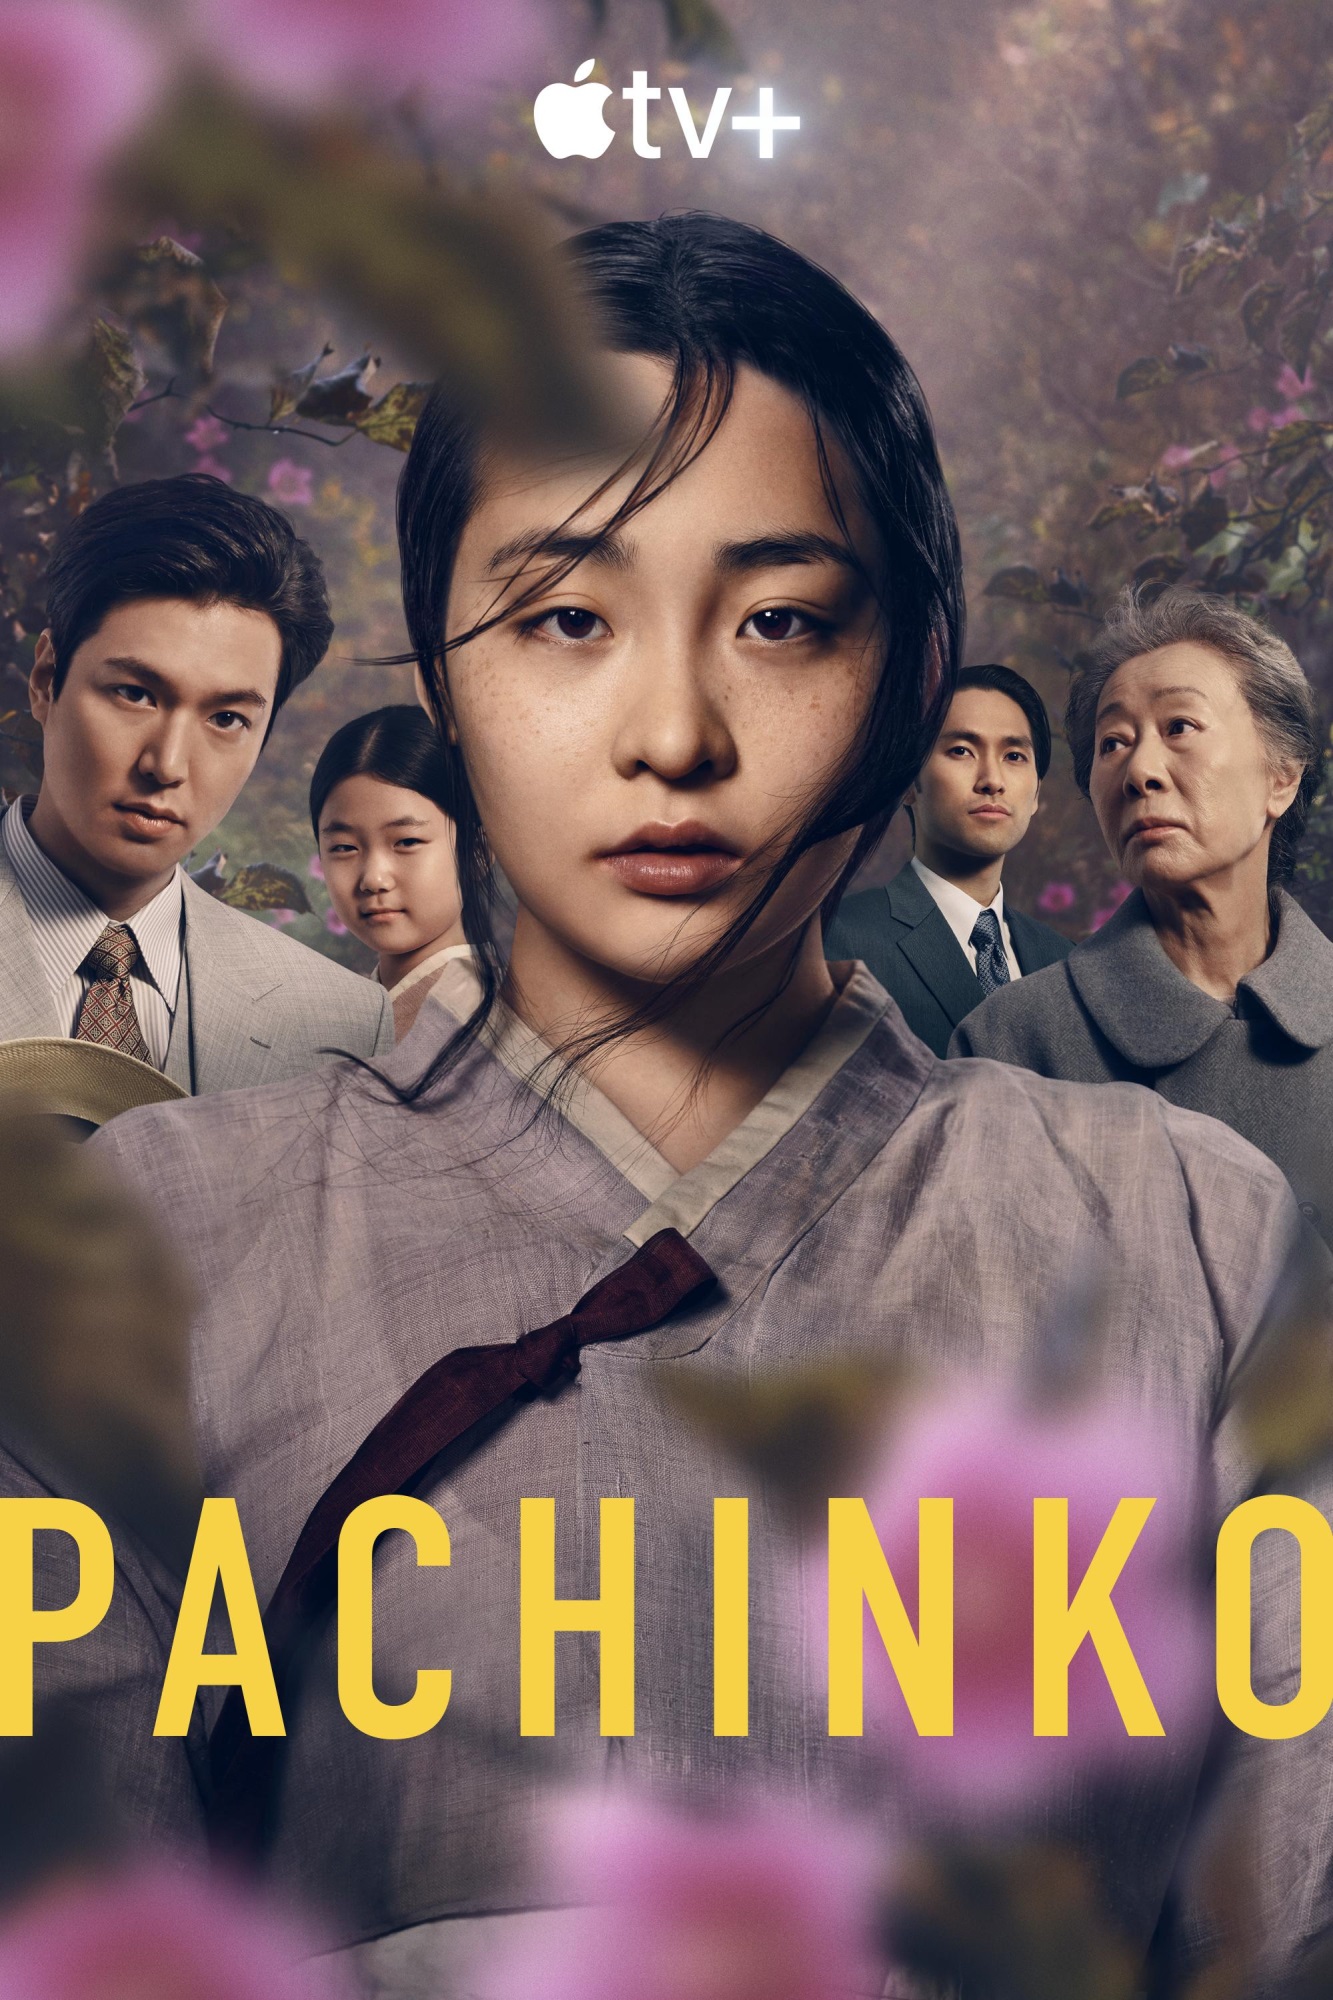 Siêu phẩm chứng minh sự lột xác của tài tử Lee Min Ho – Pachinko dự kiến sẽ tiếp tục ra phần 2 - Ảnh 1